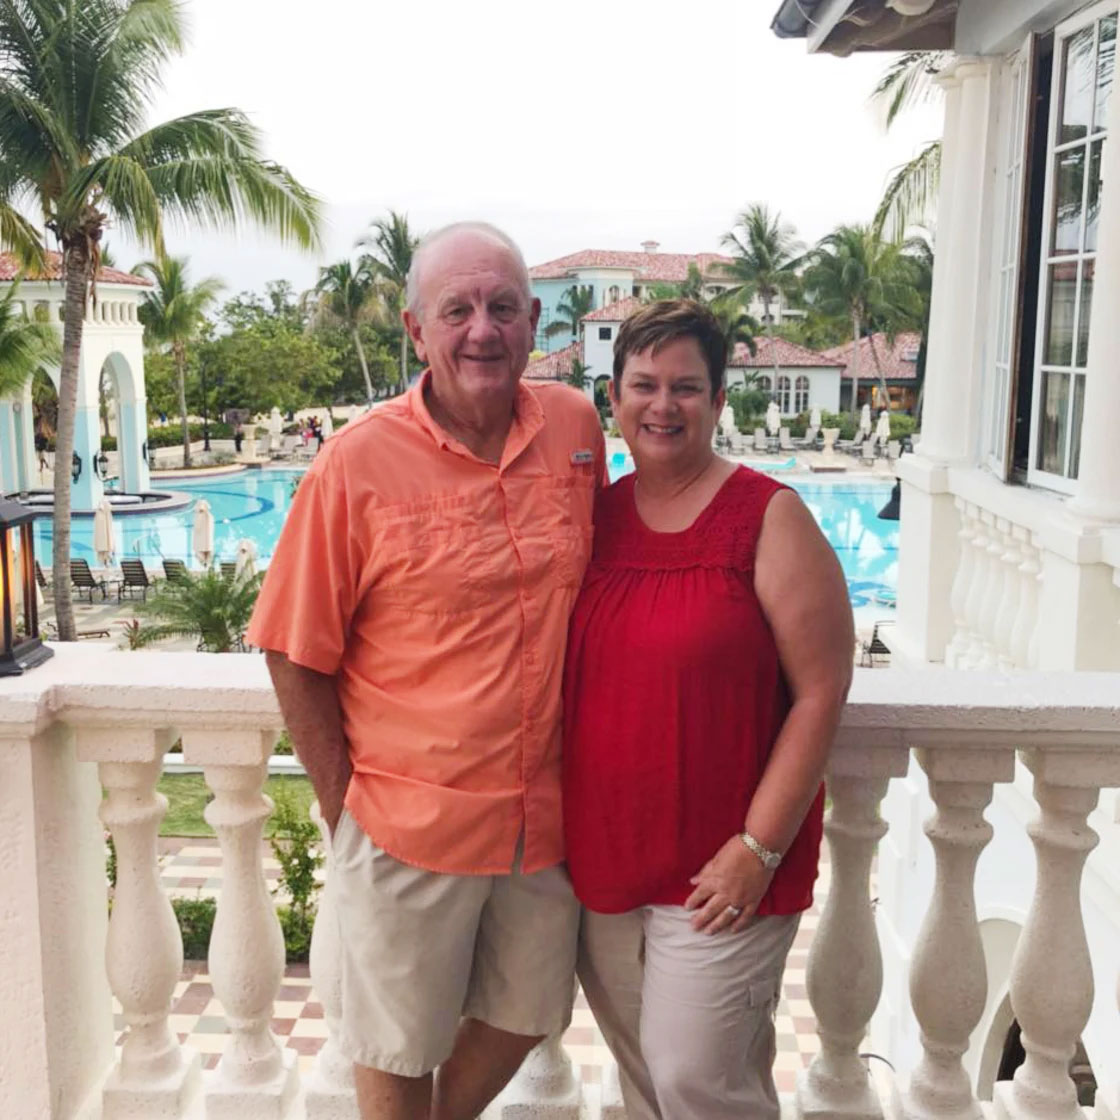 Michael Phillips, de 68 años, y su esposa Robbie, de 65, quienes fallecieron en el resort, eran agentes de viajes en Estados Unidos.